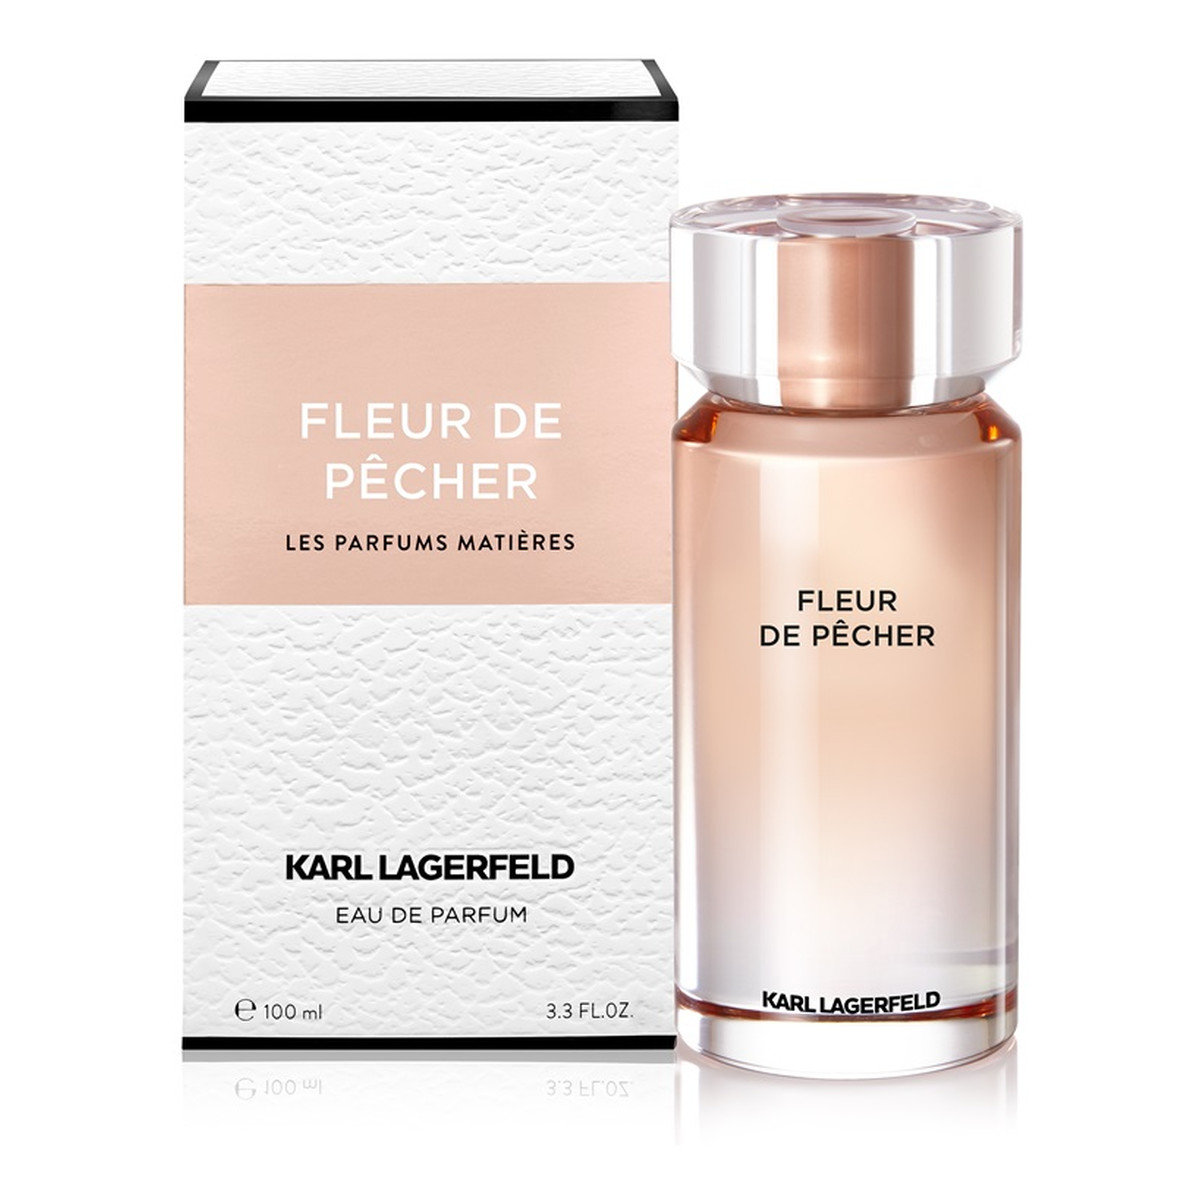 Karl Lagerfeld Fleur De Pecher Les Parfums Matieres woda perfumowana 100ml